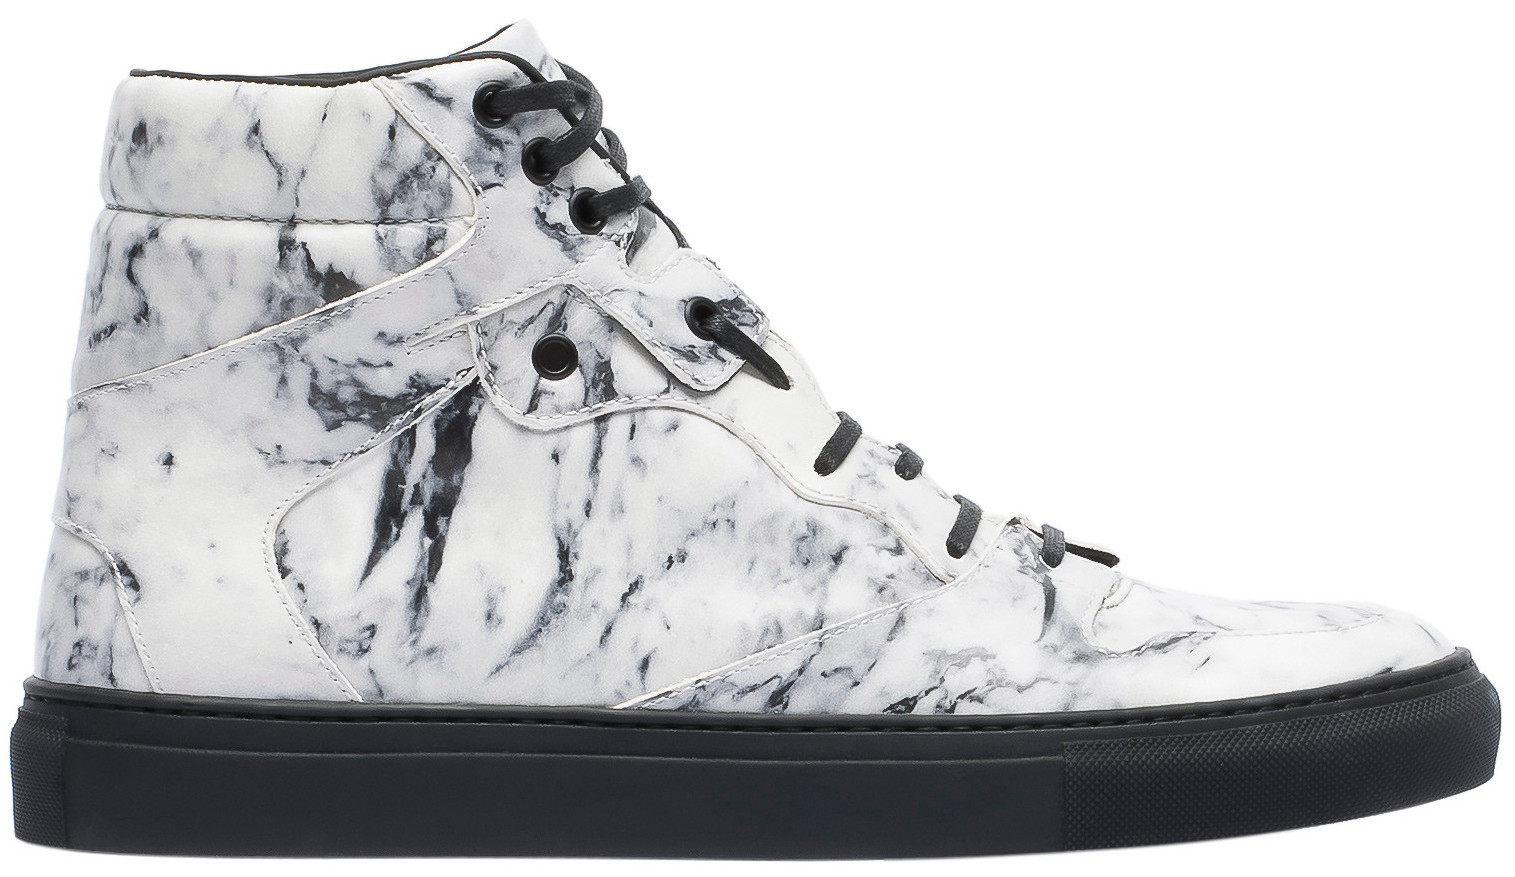 Balenciaga marble sneakers